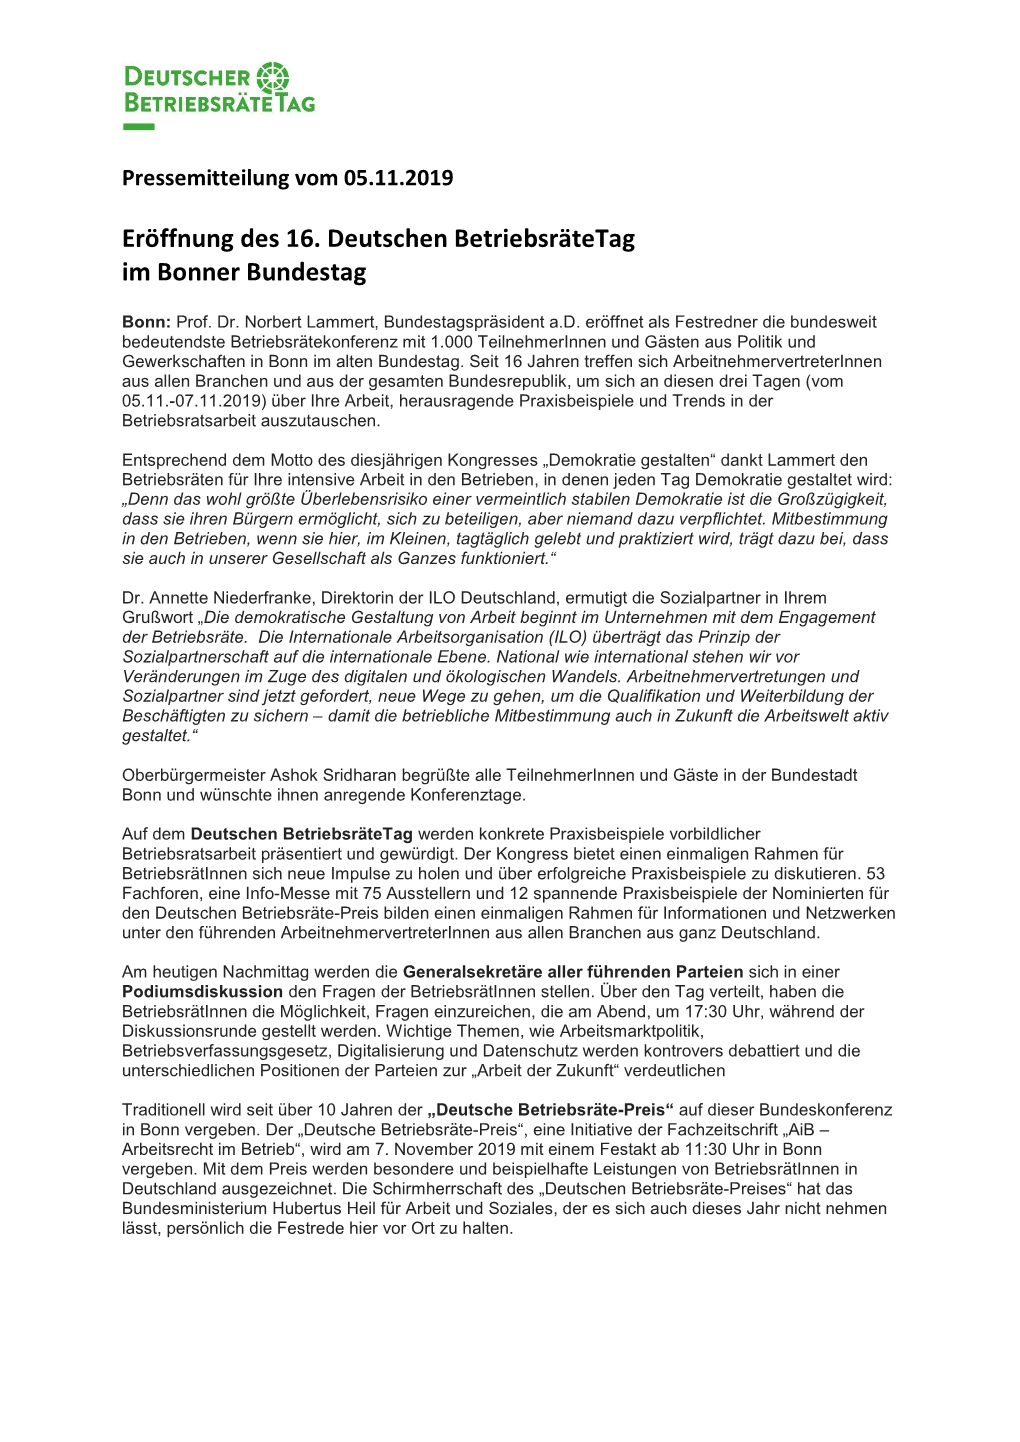 Eröffnung Des 16. Deutschen Betriebsrätetag Im Bonner Bundestagpdf